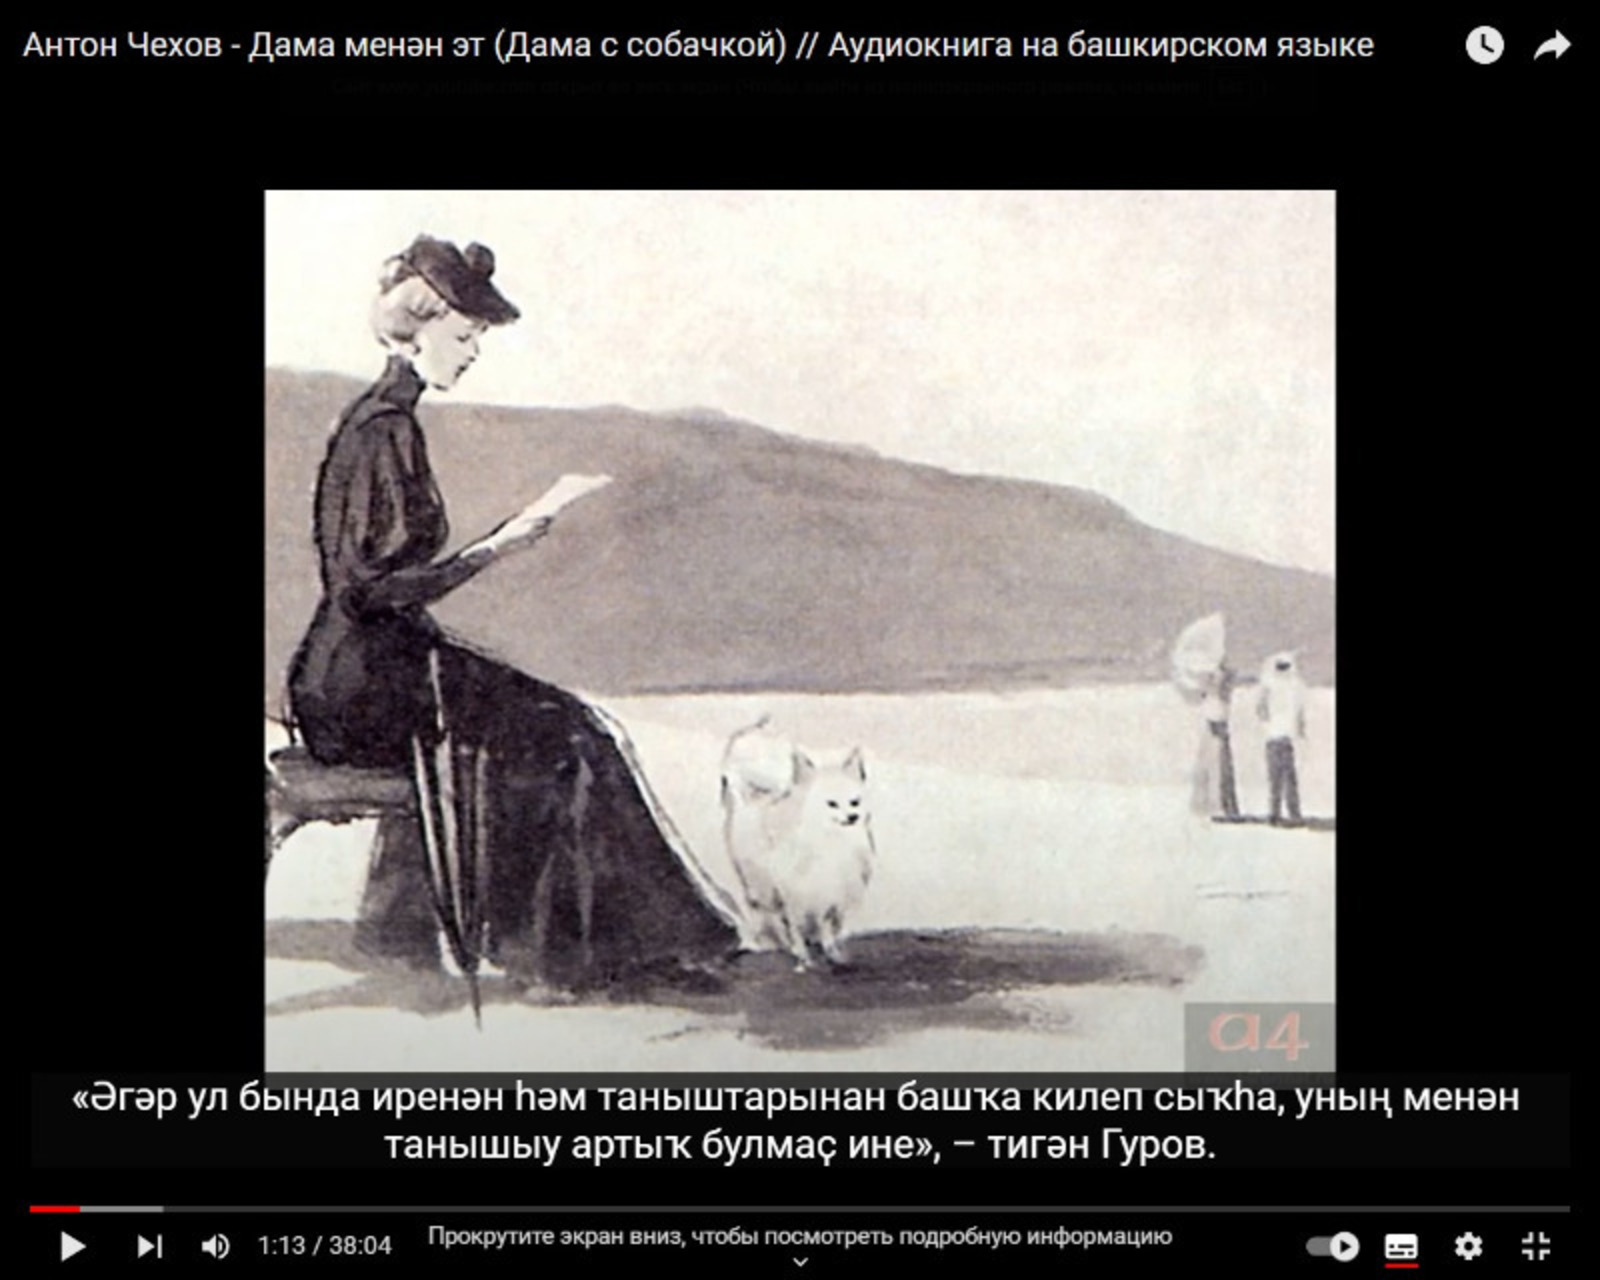 Нейросети создали первую переводную аудиокнигу на башкирском языке